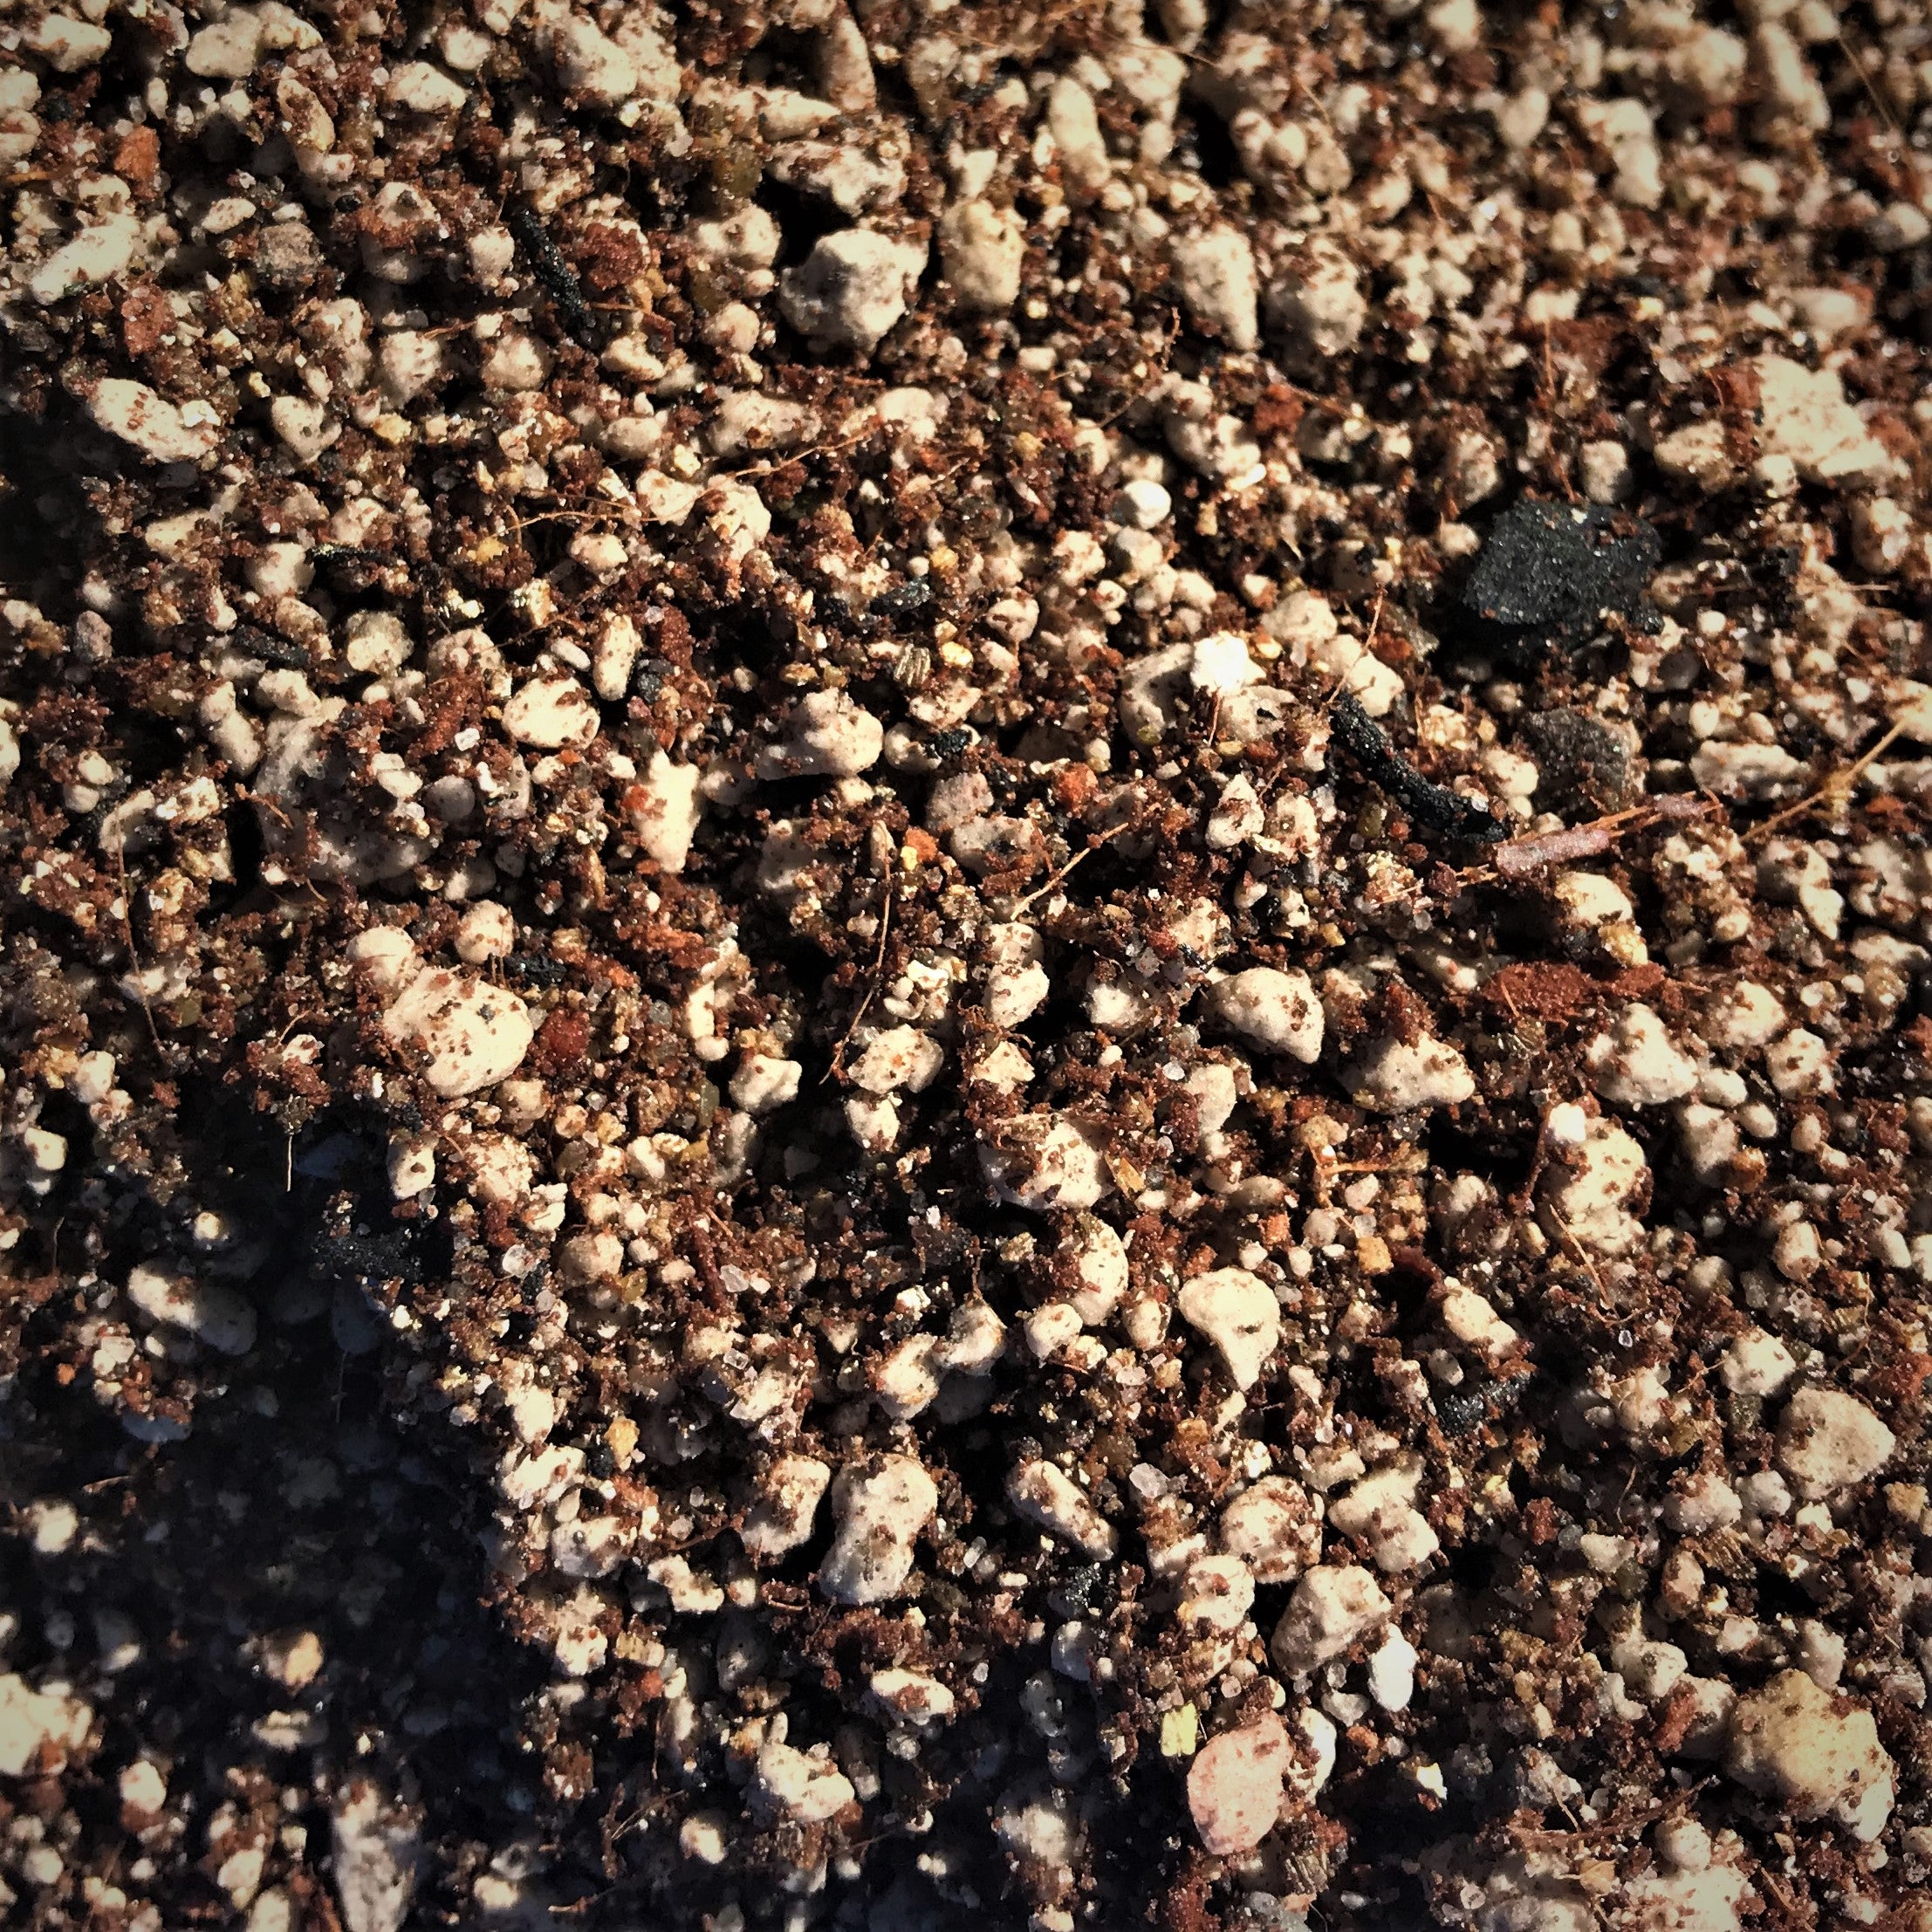 Desert Succulent soil blend